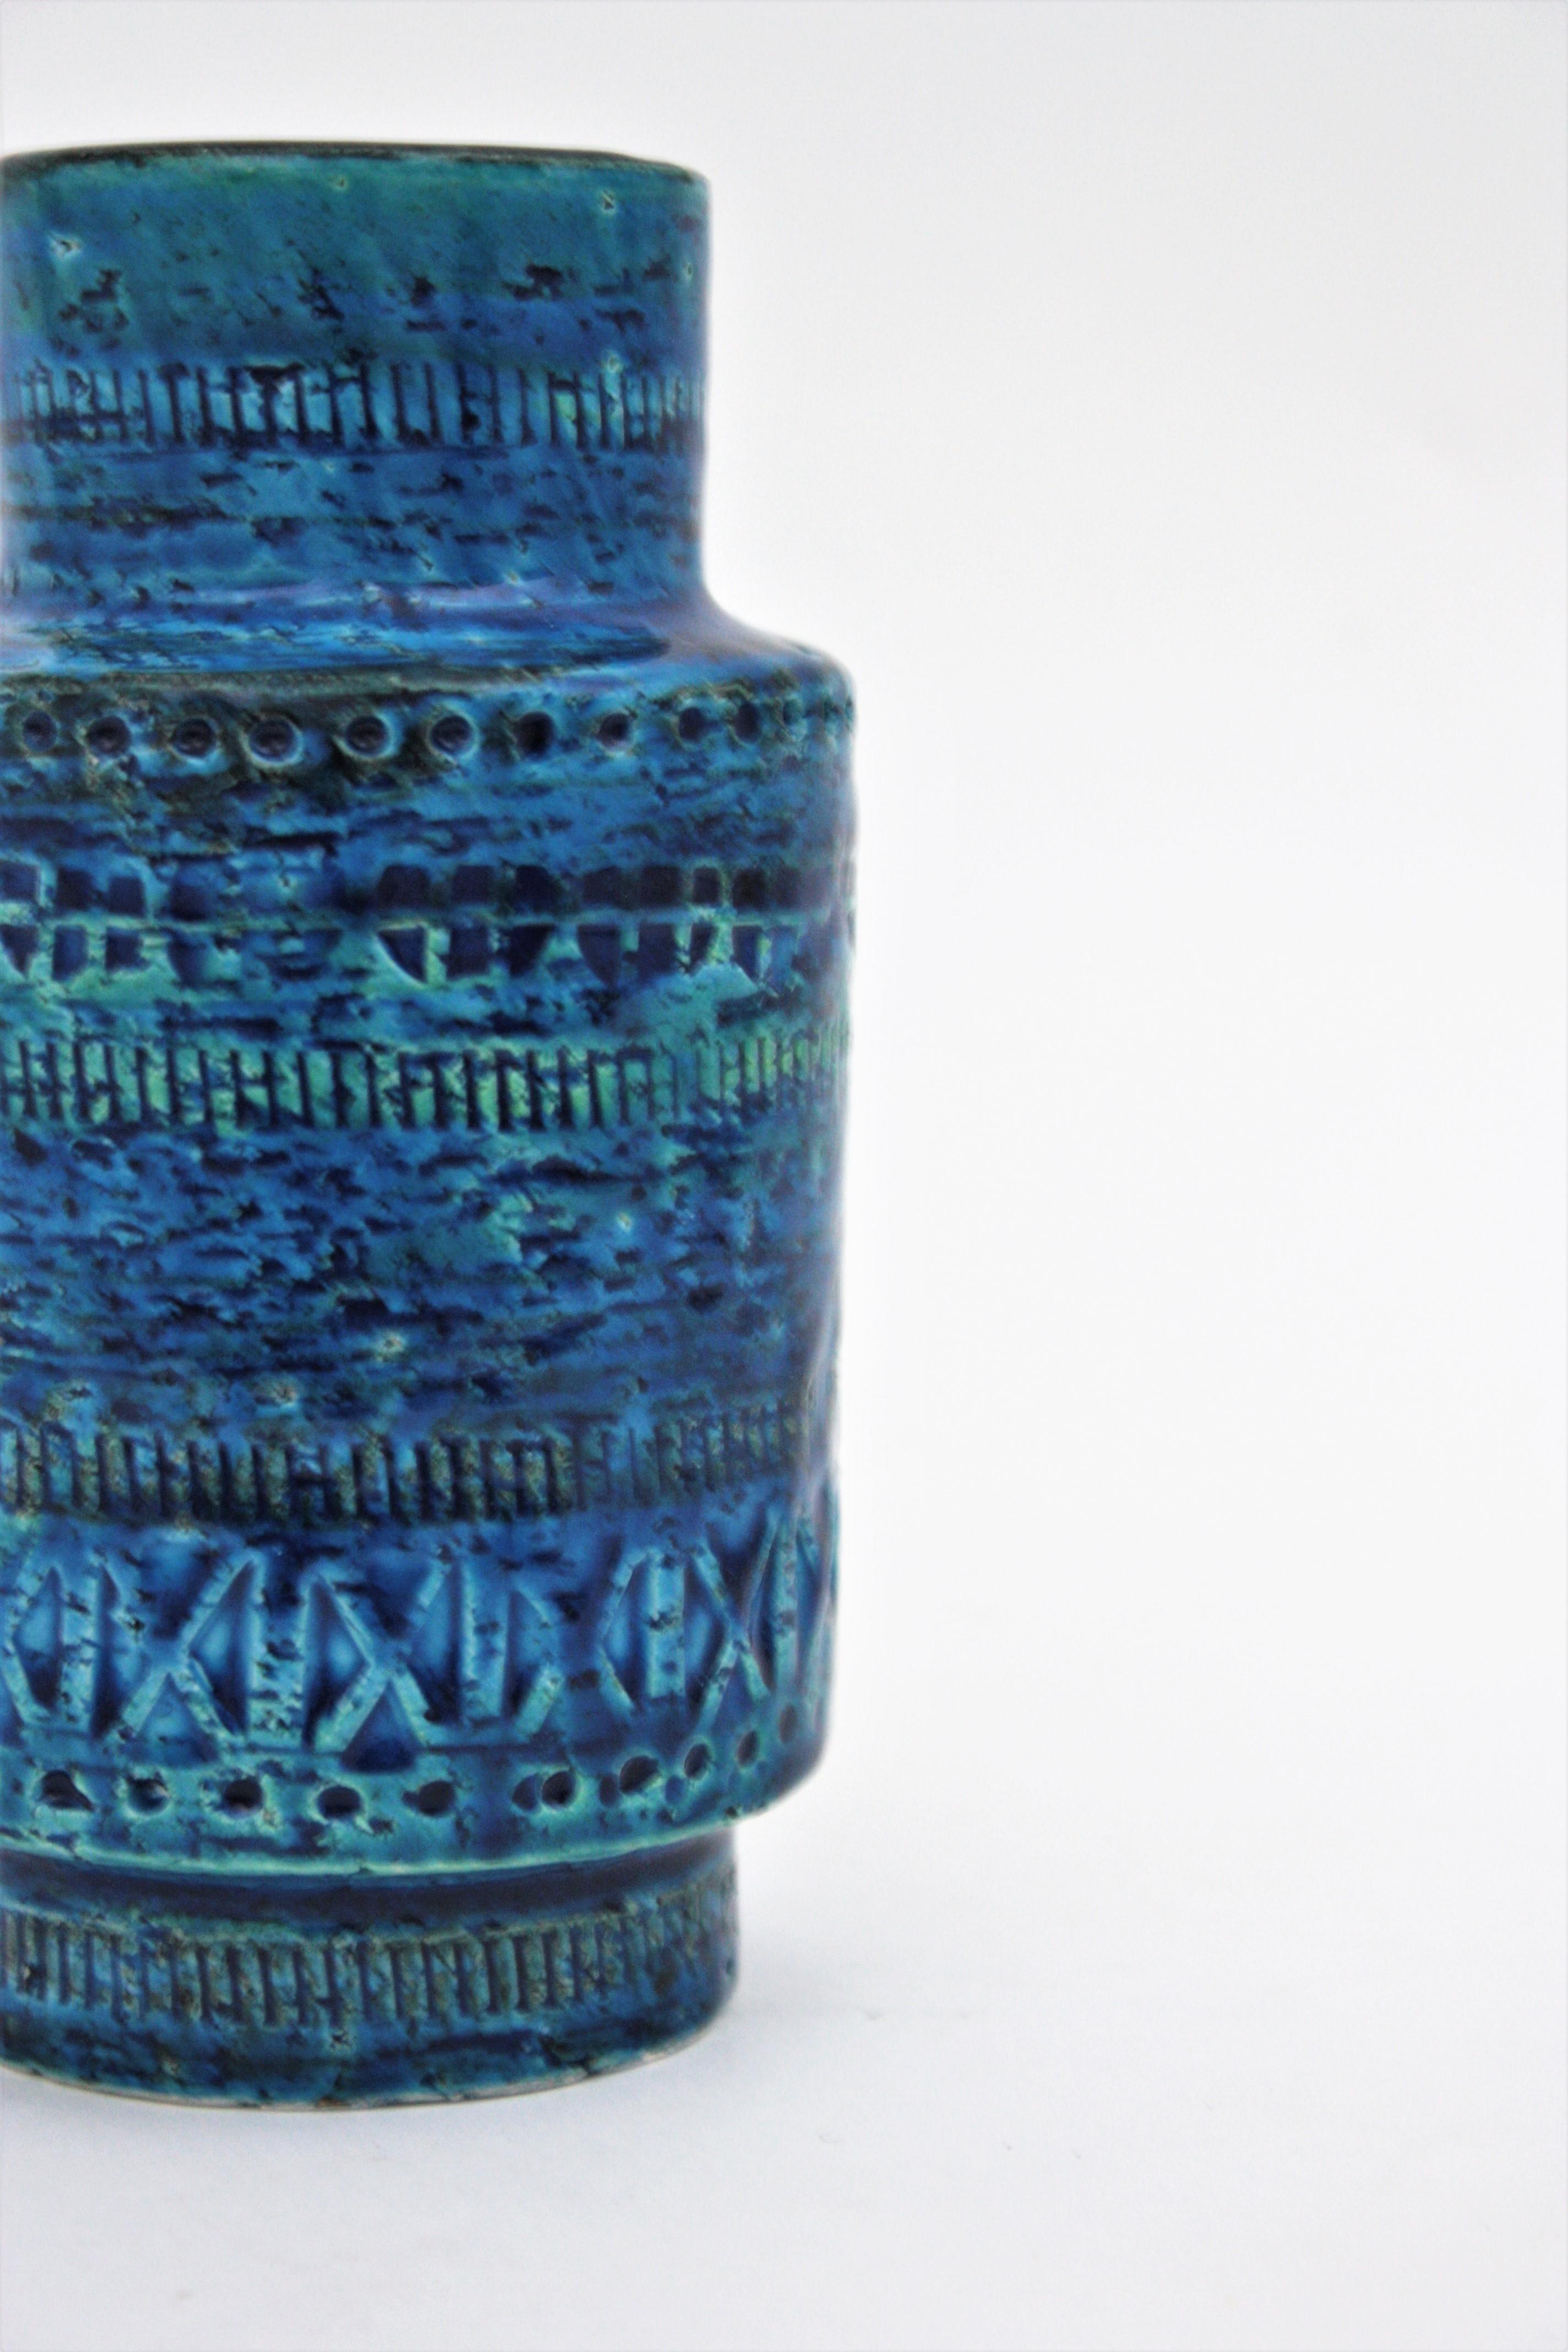 Bitossi Aldo Londi Rimini Blue Ceramic Vase, 1960s For Sale 3